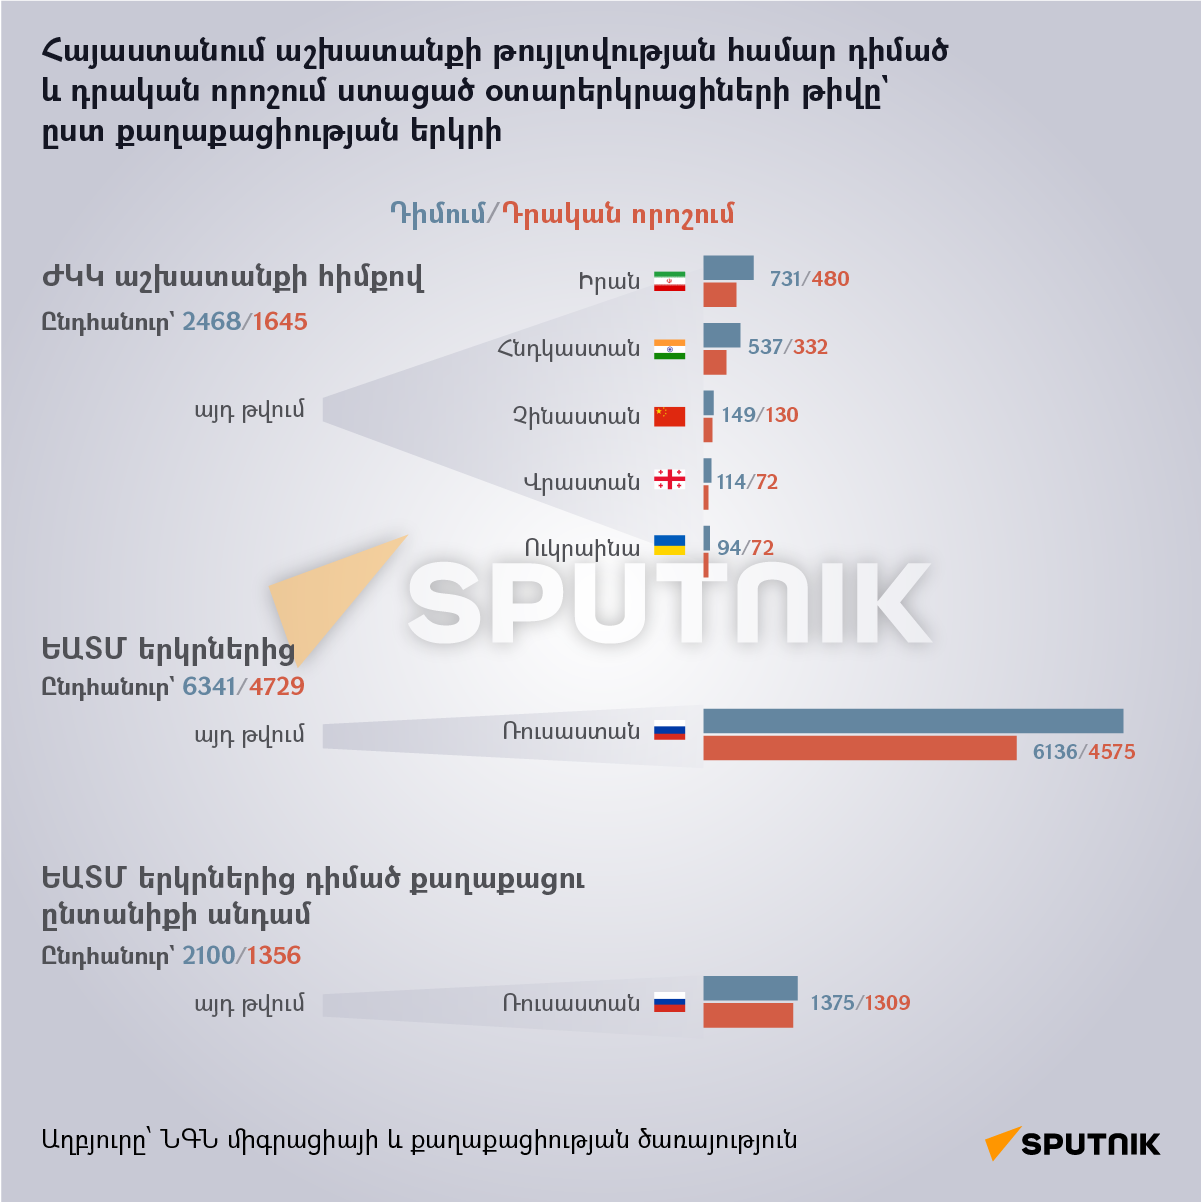 Հայաստանում աշխատանքի թույլտվության համար դիմած և դրական որոշում ստացած օտարերկրացիների թիվը` ըստ քաղաքացիության երկրի - Sputnik Արմենիա